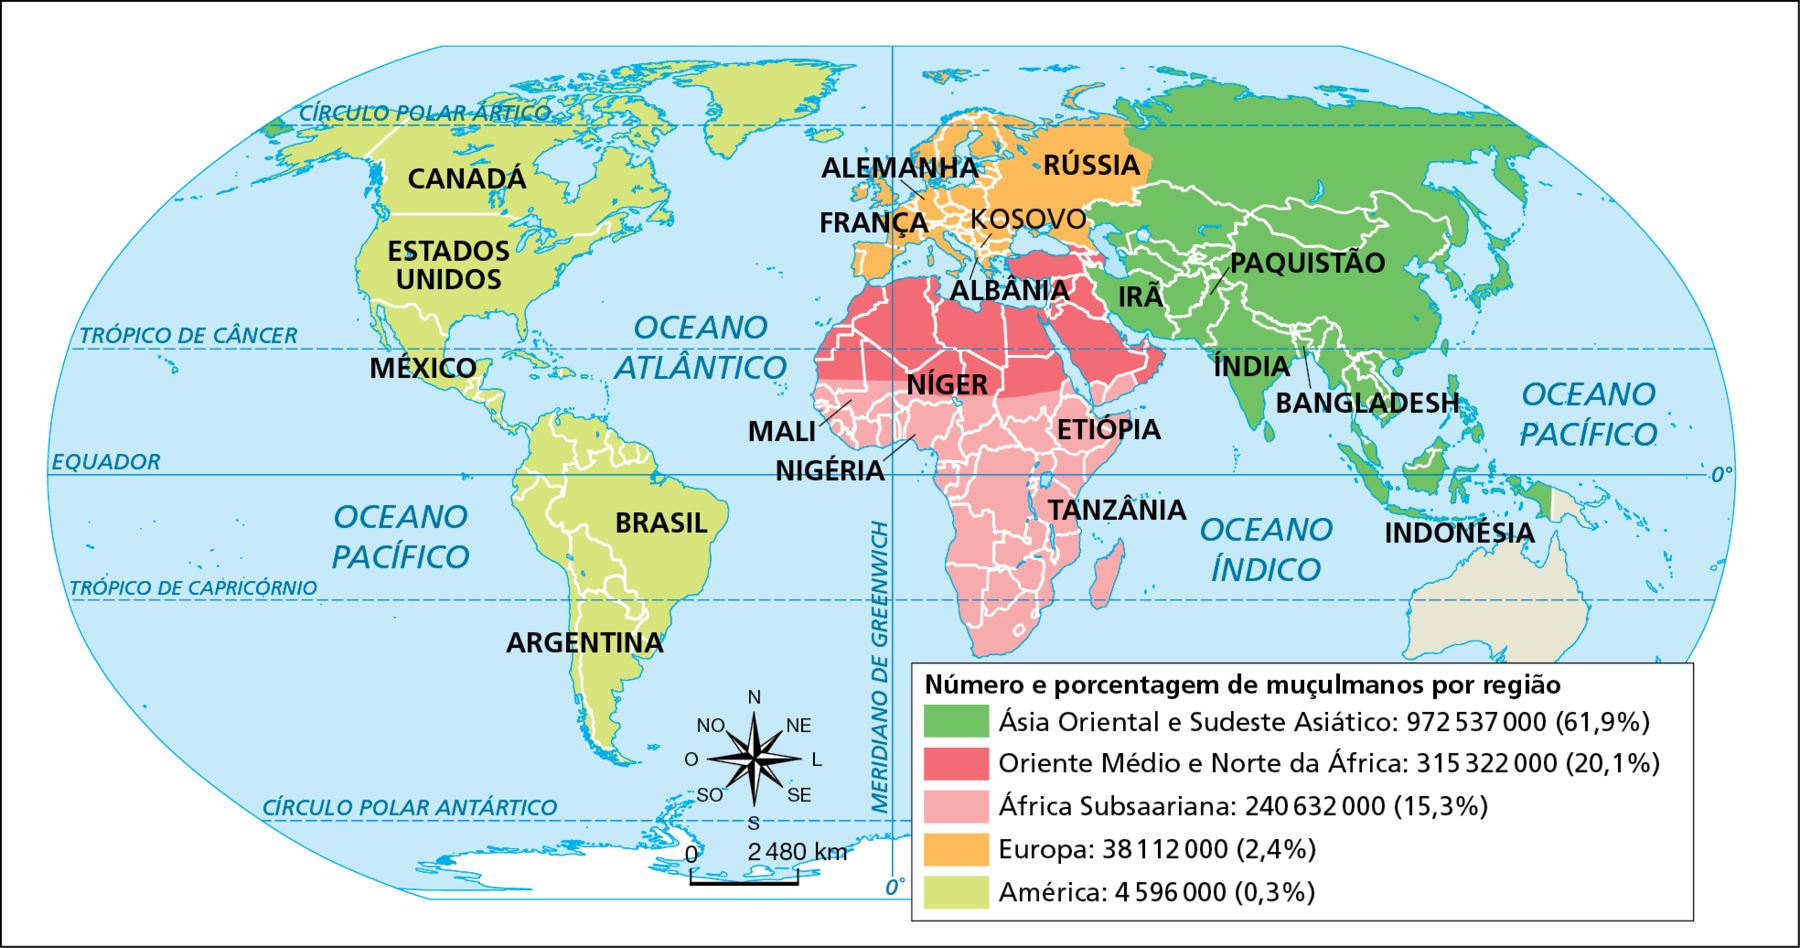 Mapa. Mundo: presença de muçulmanos (2009). Planisfério político com a indicação do percentual de muçulmanos por diferentes áreas. Em verde, Ásia Oriental e Sudeste Asiático: 972.537.000 – (61,9 por cento), compreendendo países como Índia, Irã, Paquistão, Bangladesh e Indonésia. Em vermelho, Oriente médio e Norte da África: 315.322.000 – (20,1 por cento), compreendendo países como Albânia e Níger. Em rosa, África Subsaariana: 240.632.000 – (15,3 por cento), compreendendo países como Etiópia, Tanzânia, Nigéria e Mali. Em laranja, Europa: 38.112.000 – (2,4 por cento), compreendendo países como França, Alemanha, parte da Rússia e o território do Kosovo. Em verde claro, América: 4.596.000 – (0,3 por cento), compreendendo países como Brasil, Argentina, México, Estados Unidos e Canadá. No canto inferior, rosa dos ventos e escala de 0 a 2480 quilômetros.